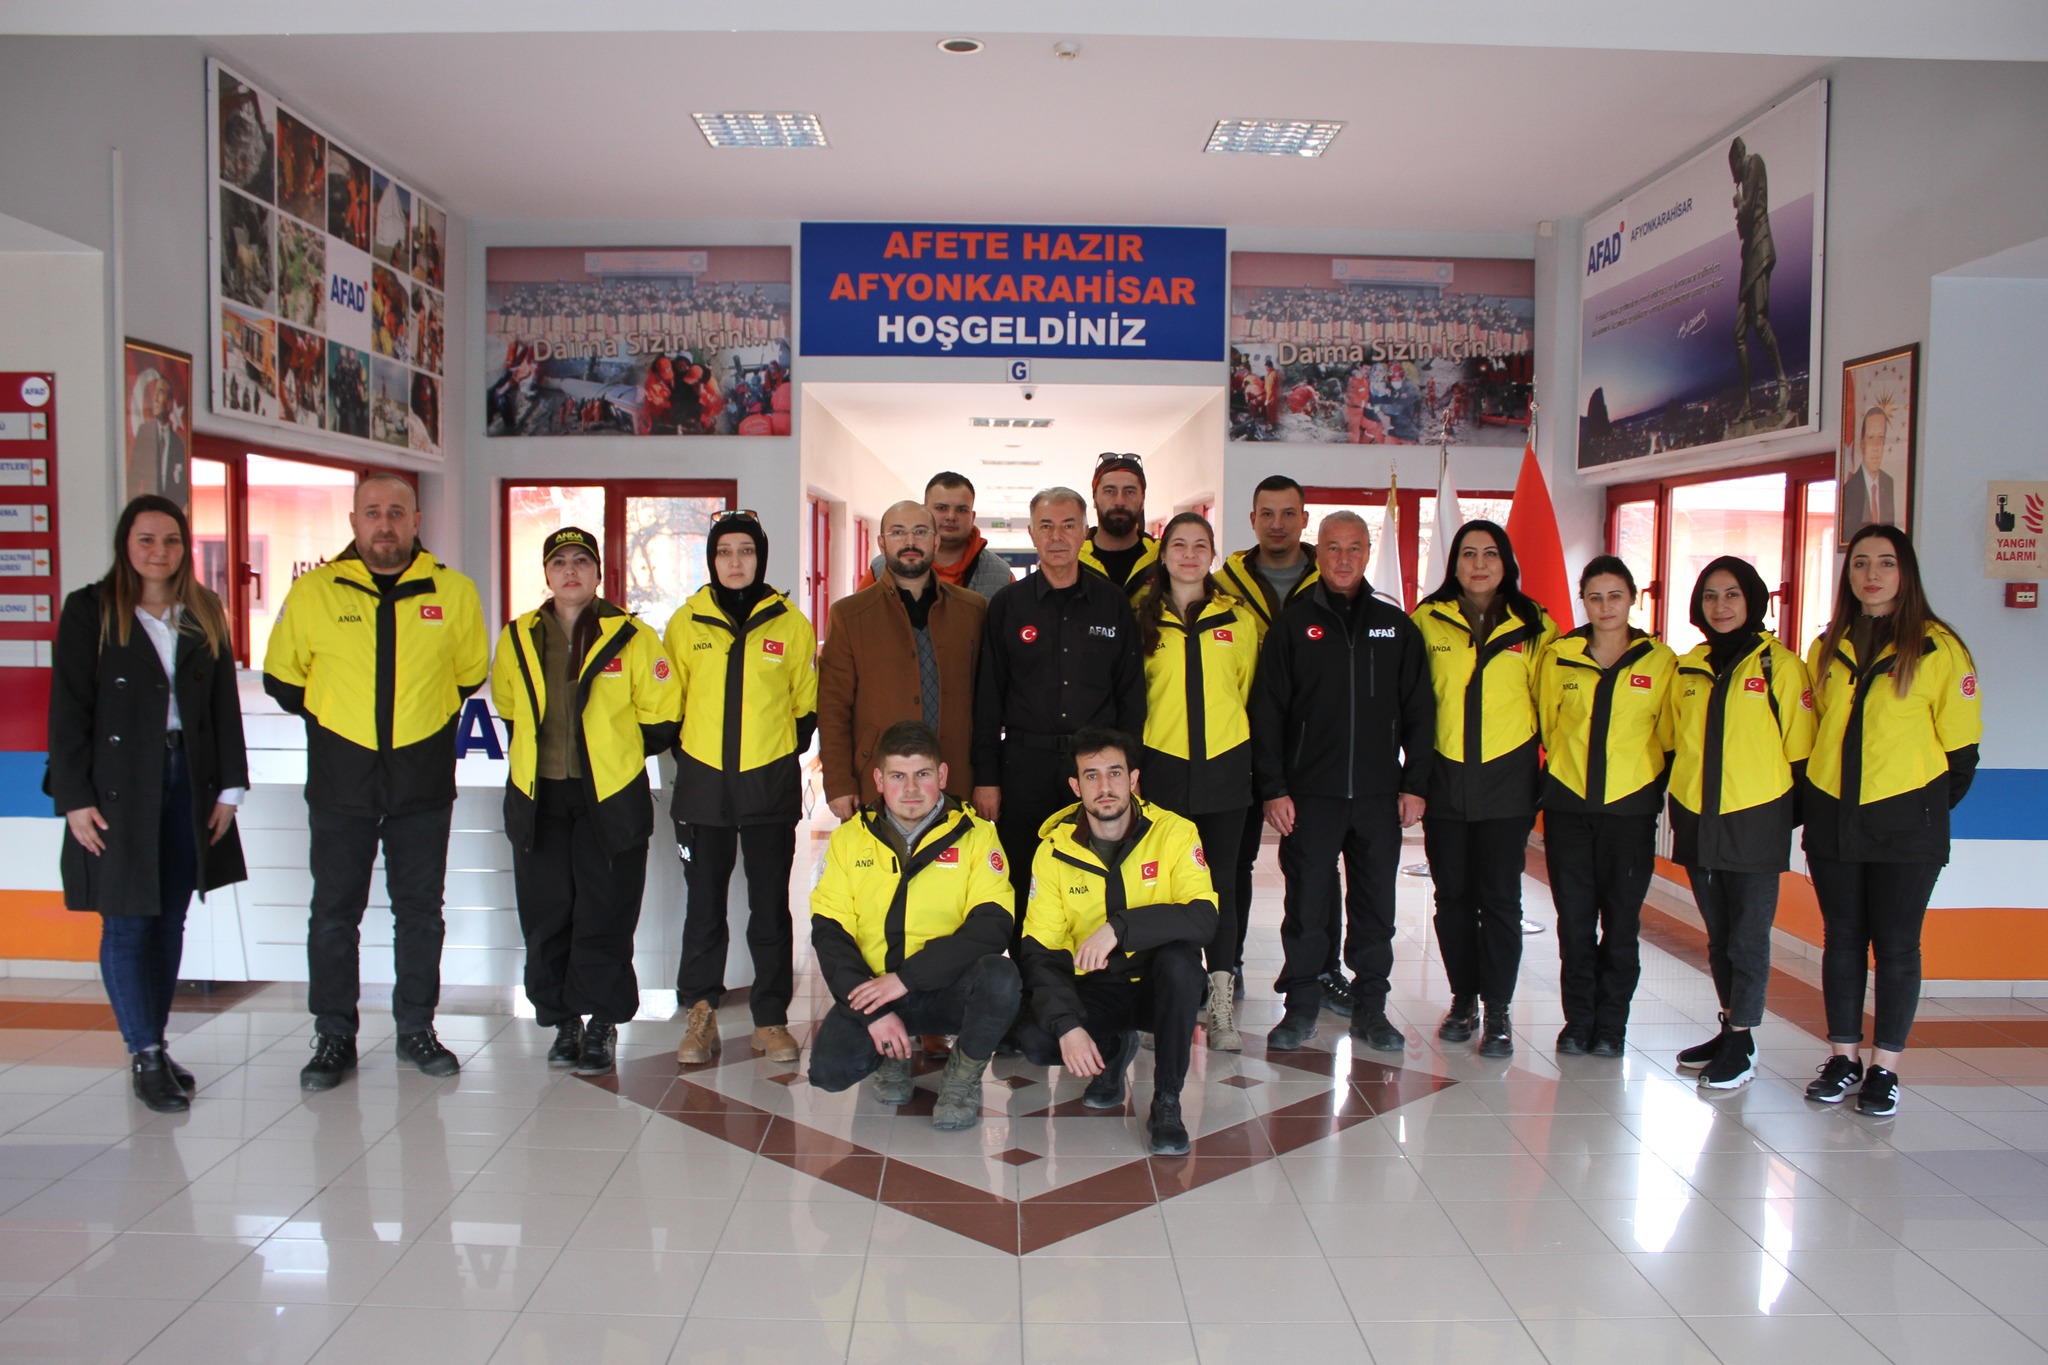 Afyonkarahisar AFAD Müdürlüğü'ne yeni atanan Atila Altunbulak'a tebrik ziyareti gerçekleştirildi.